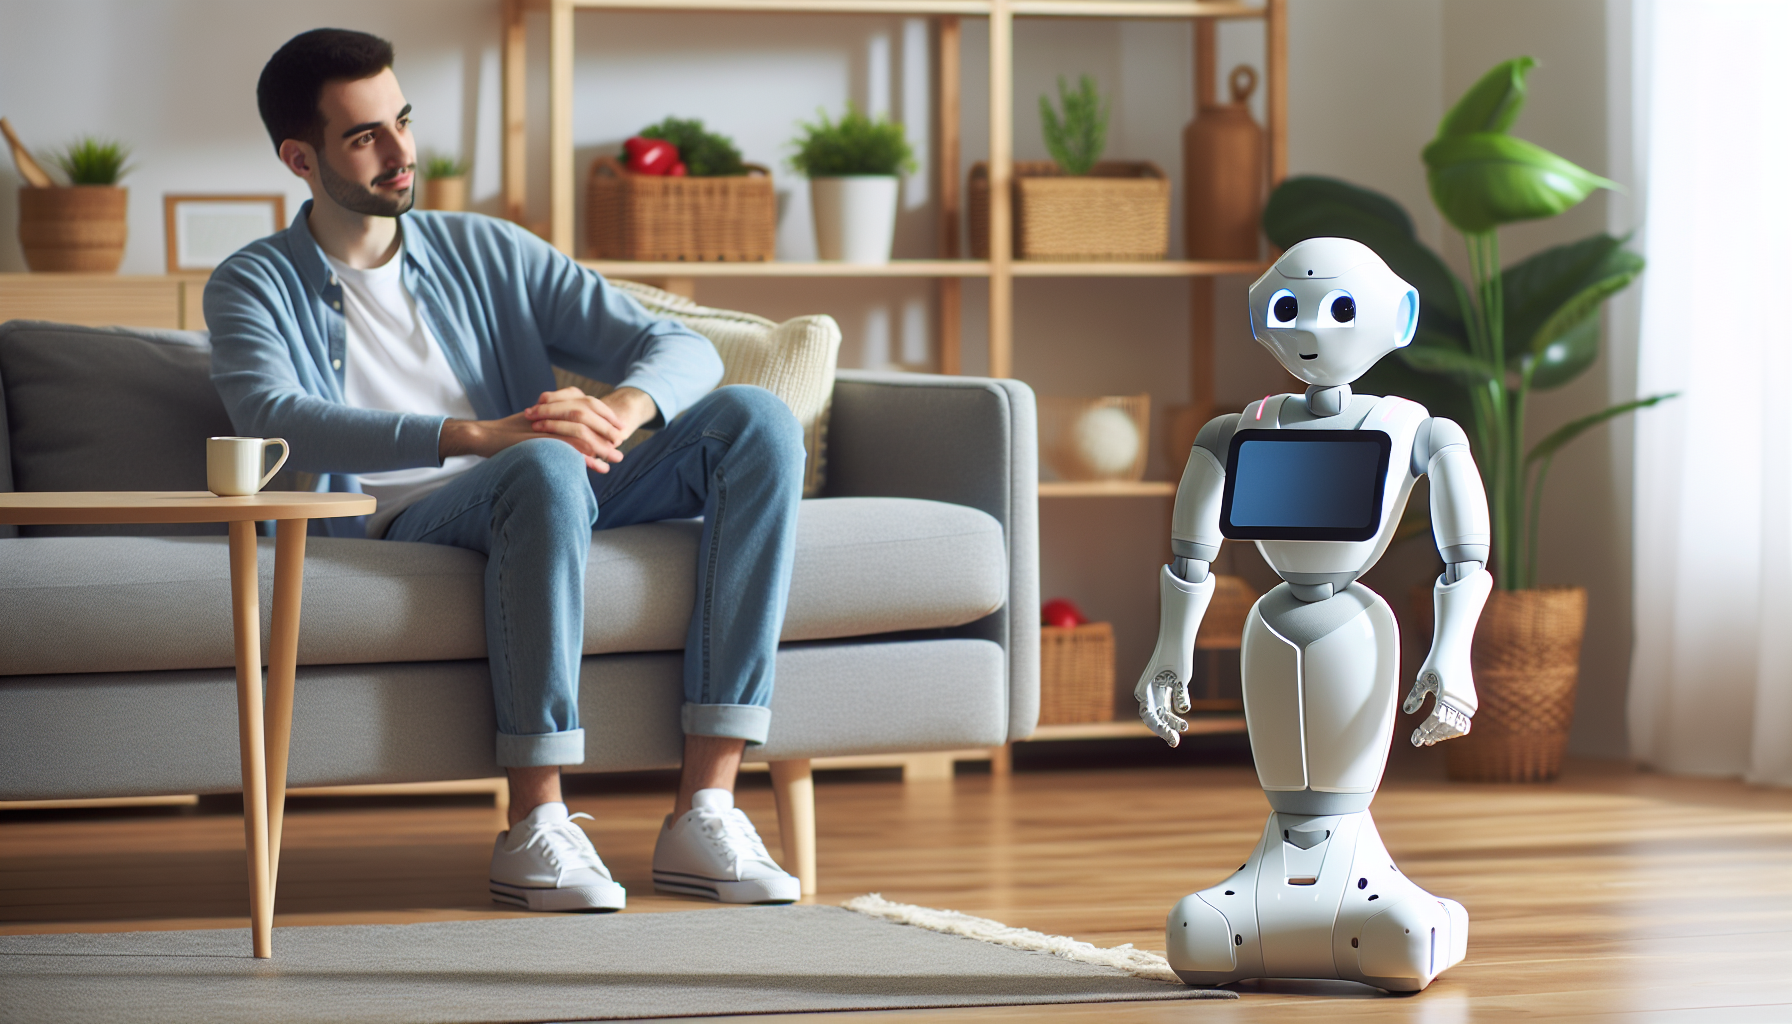 了解有关软银社交机器人 Pepper 的一切 - 它的功能、用途及其对社会的影响。